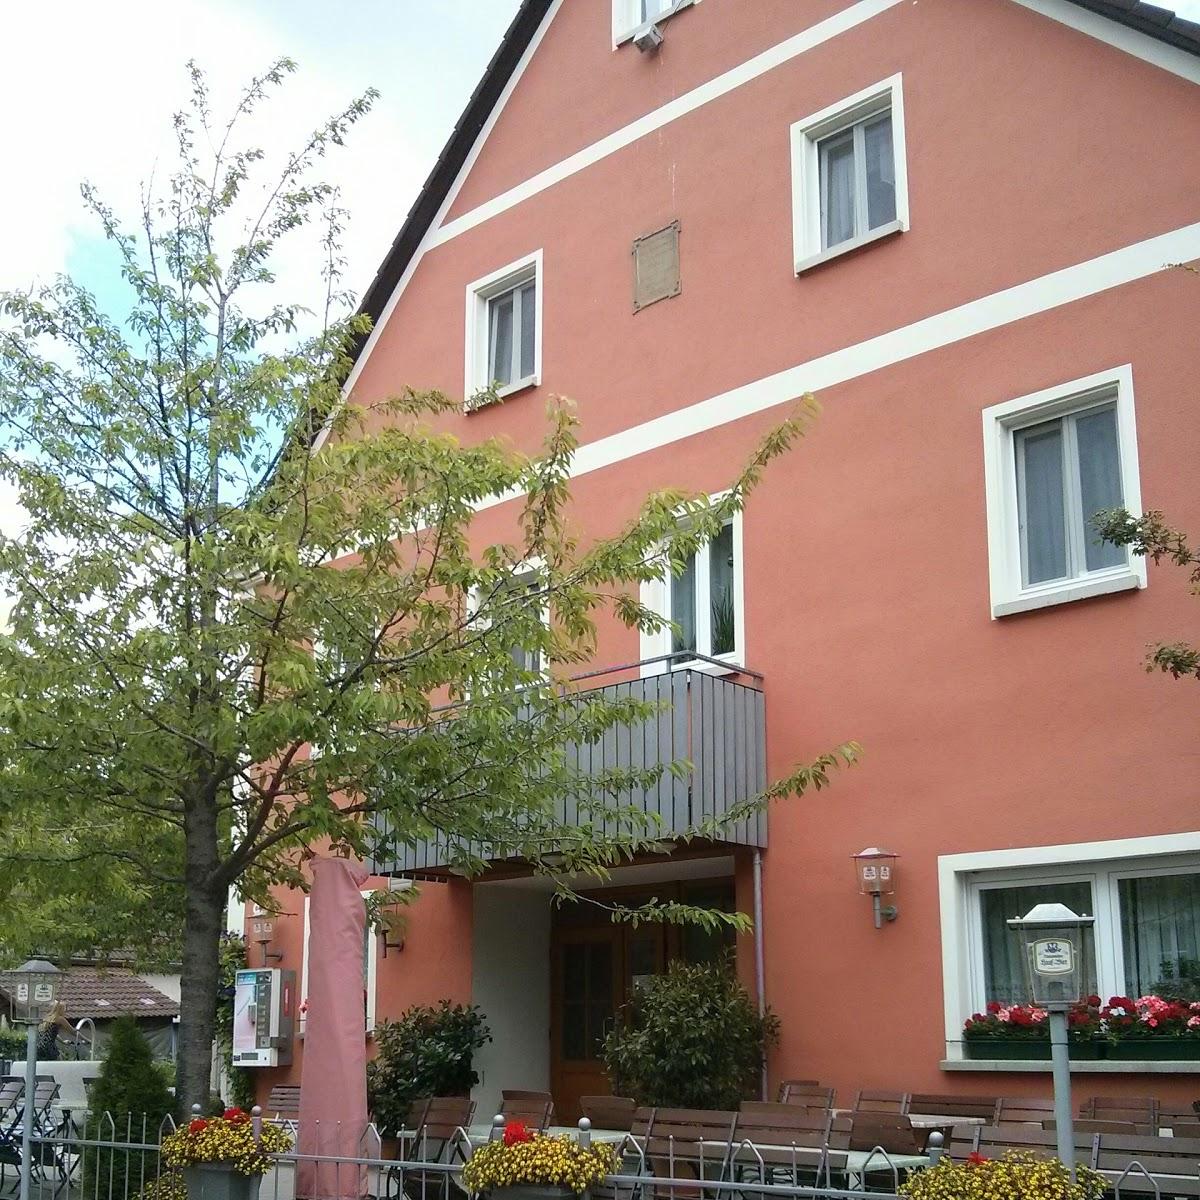 Restaurant "Gasthaus Klein" in Dinkelsbühl